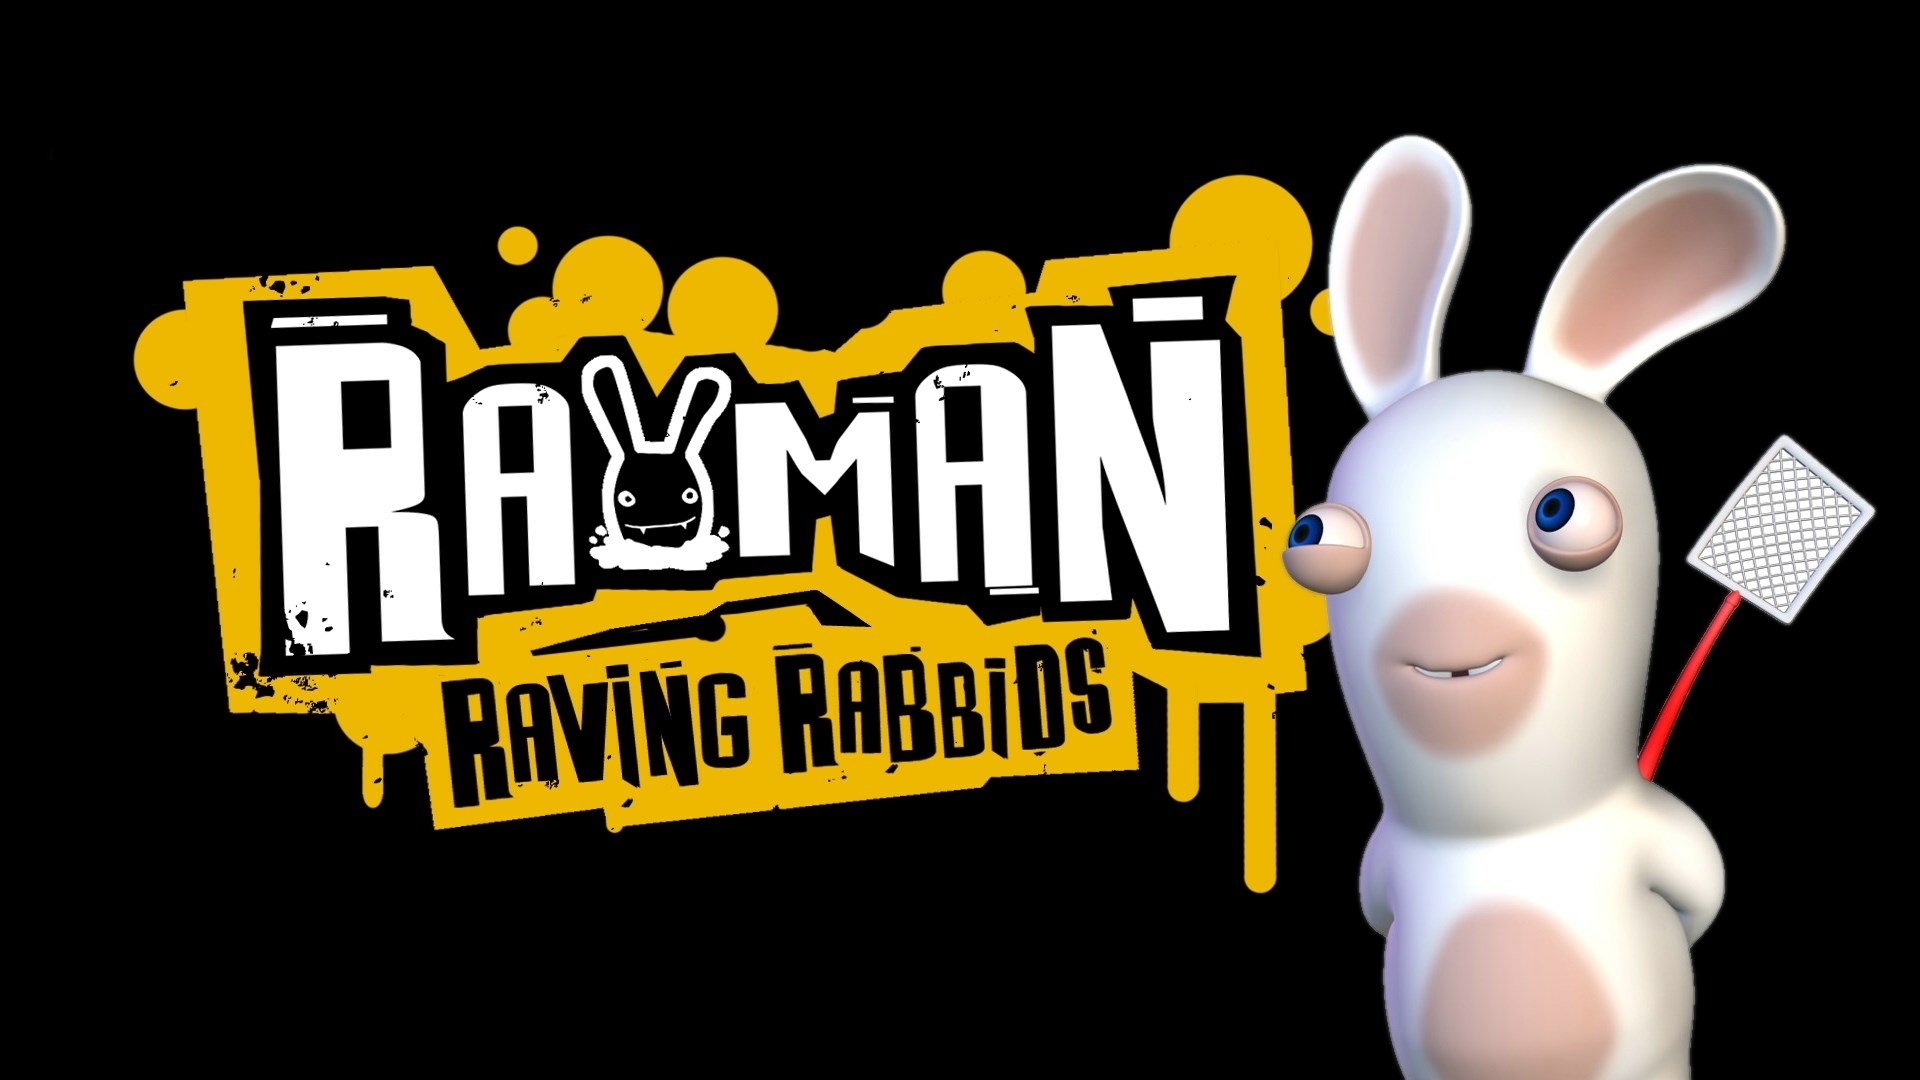 download rayman raving rabbids ps2